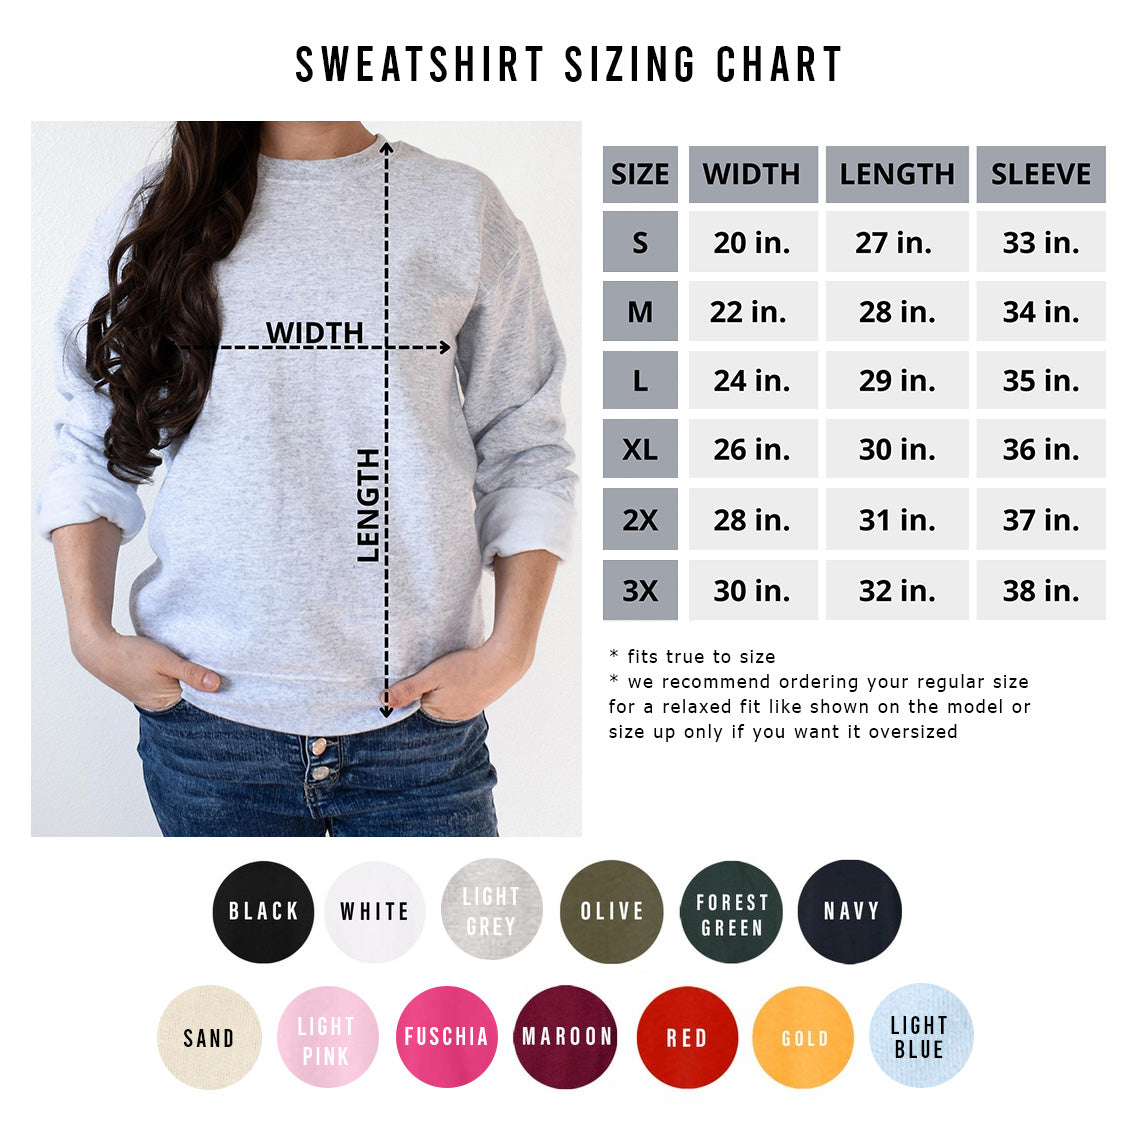 Matcha Addict Sweatshirt